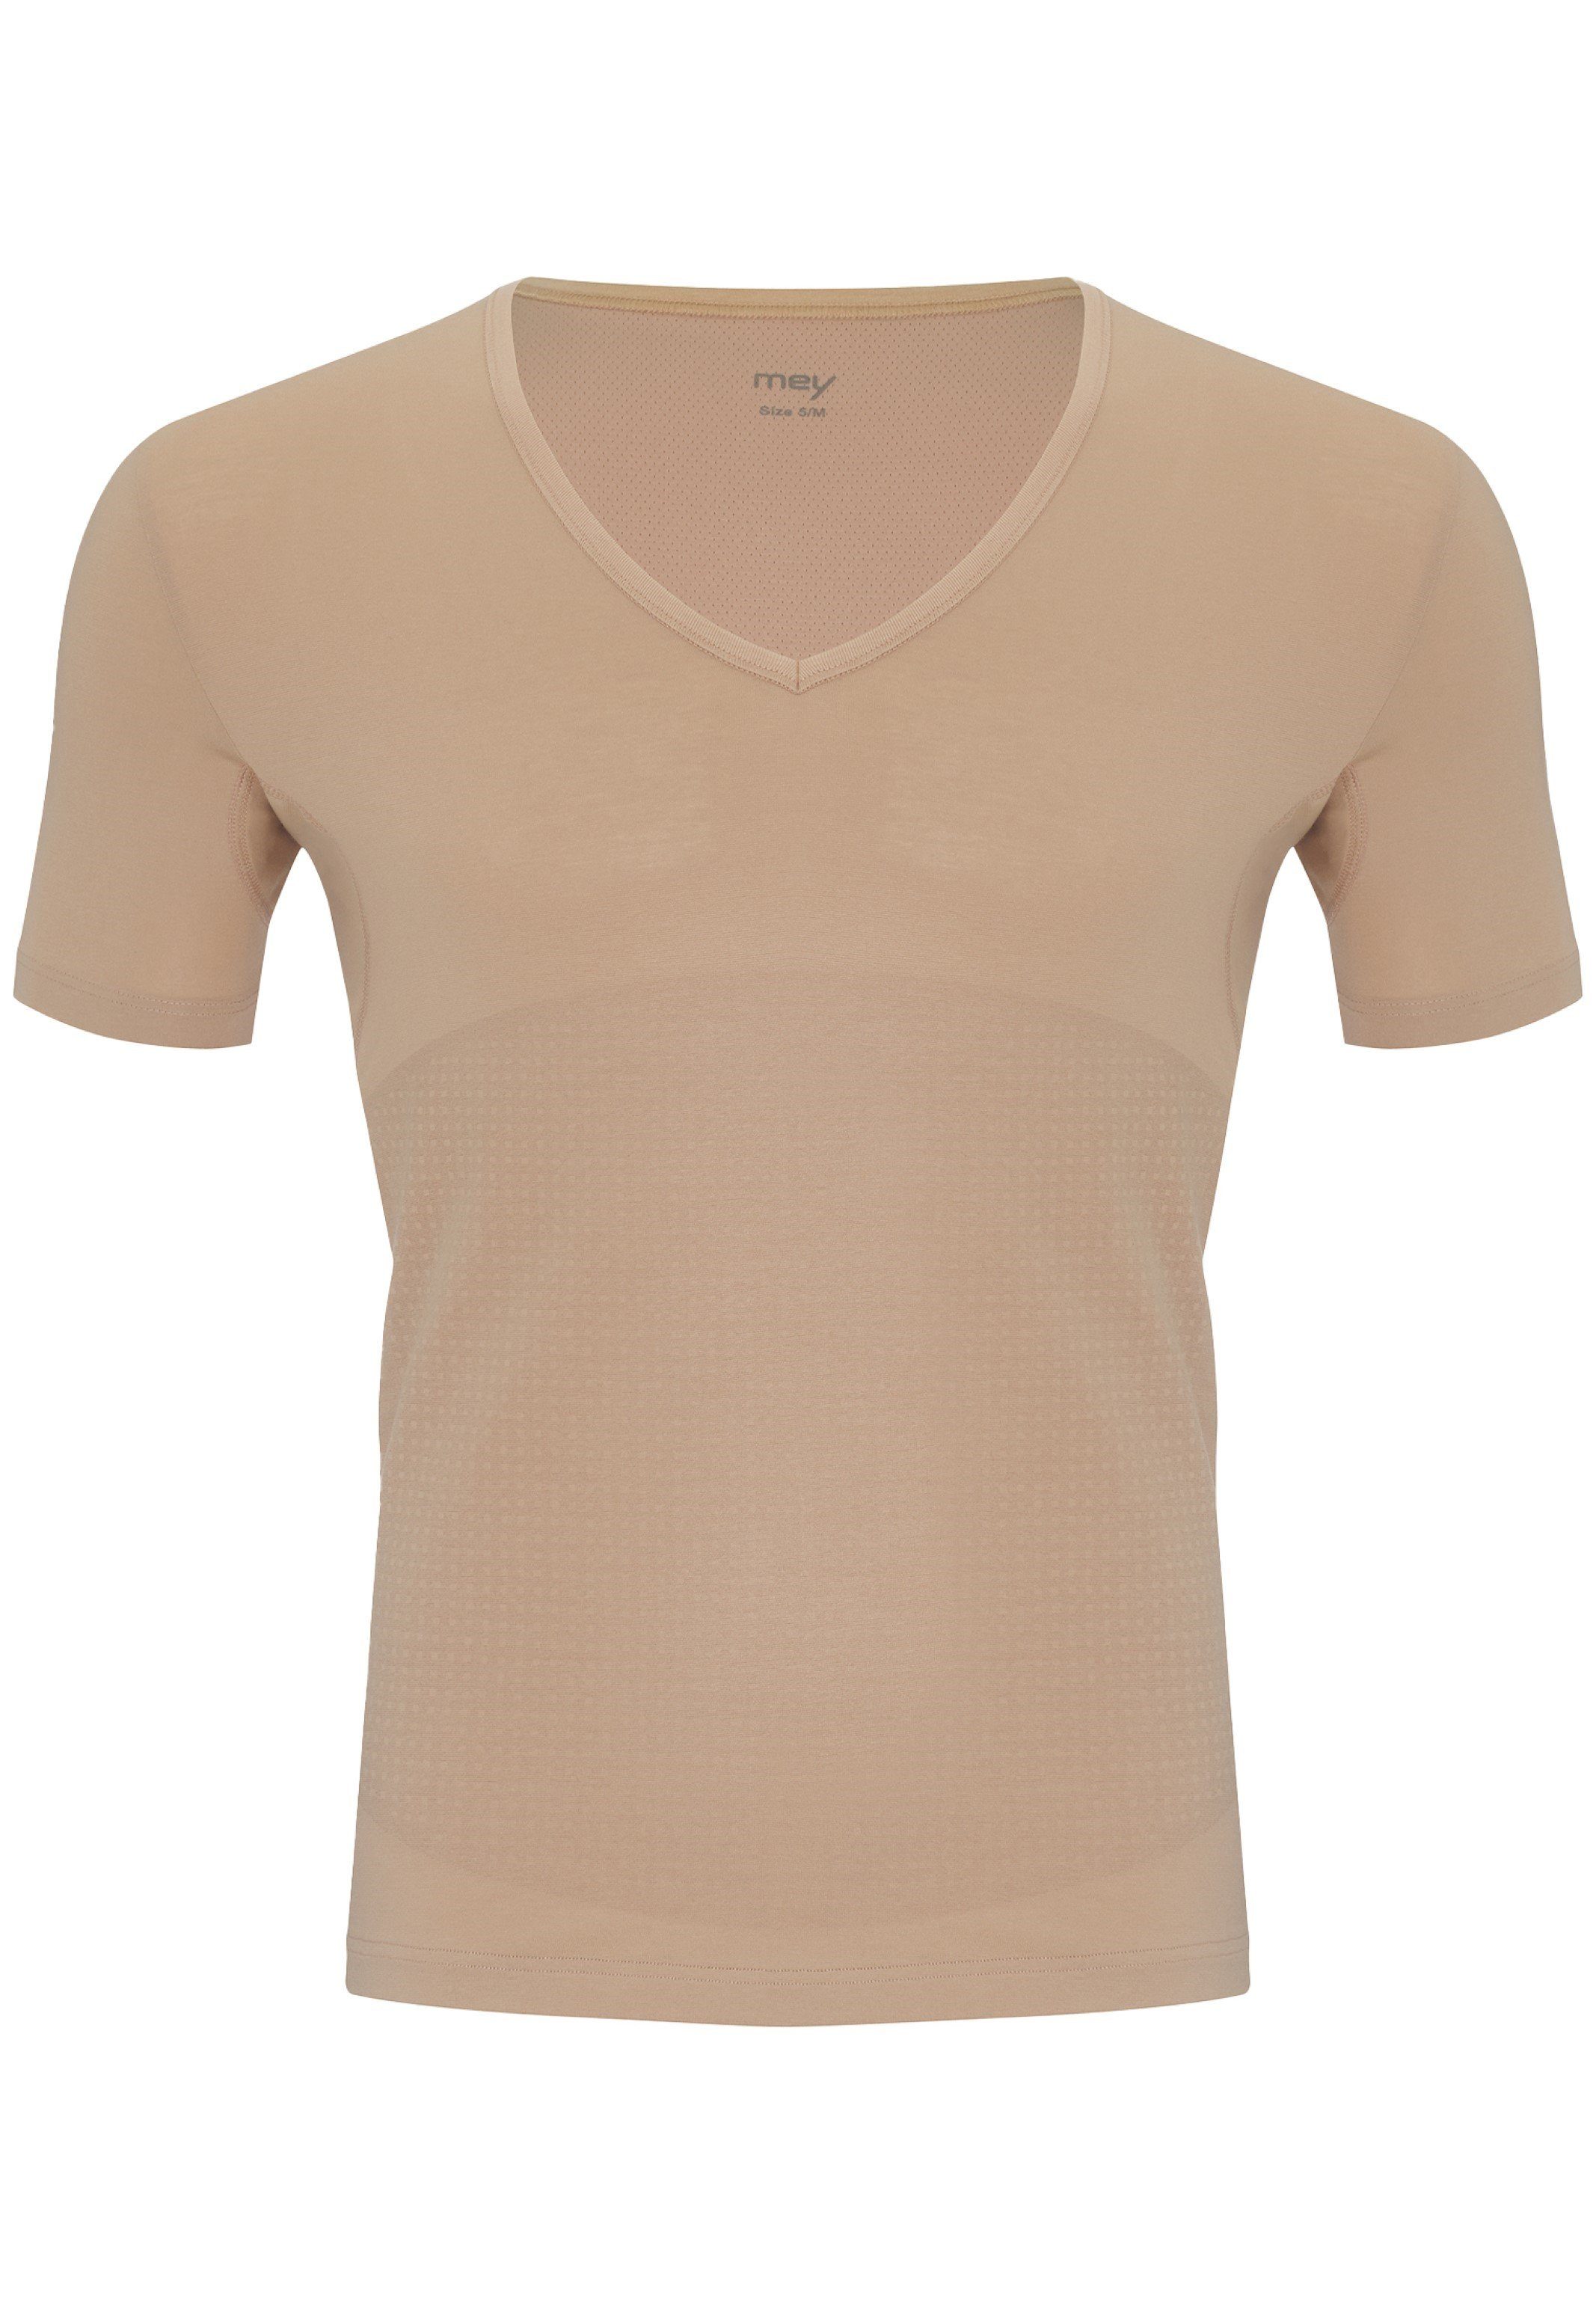 Mey Unterhemd Dry Cotton / - - (1-St) Unterhemd Light-Beige Kurzarm Shirt Baumwolle Thermoregulierend